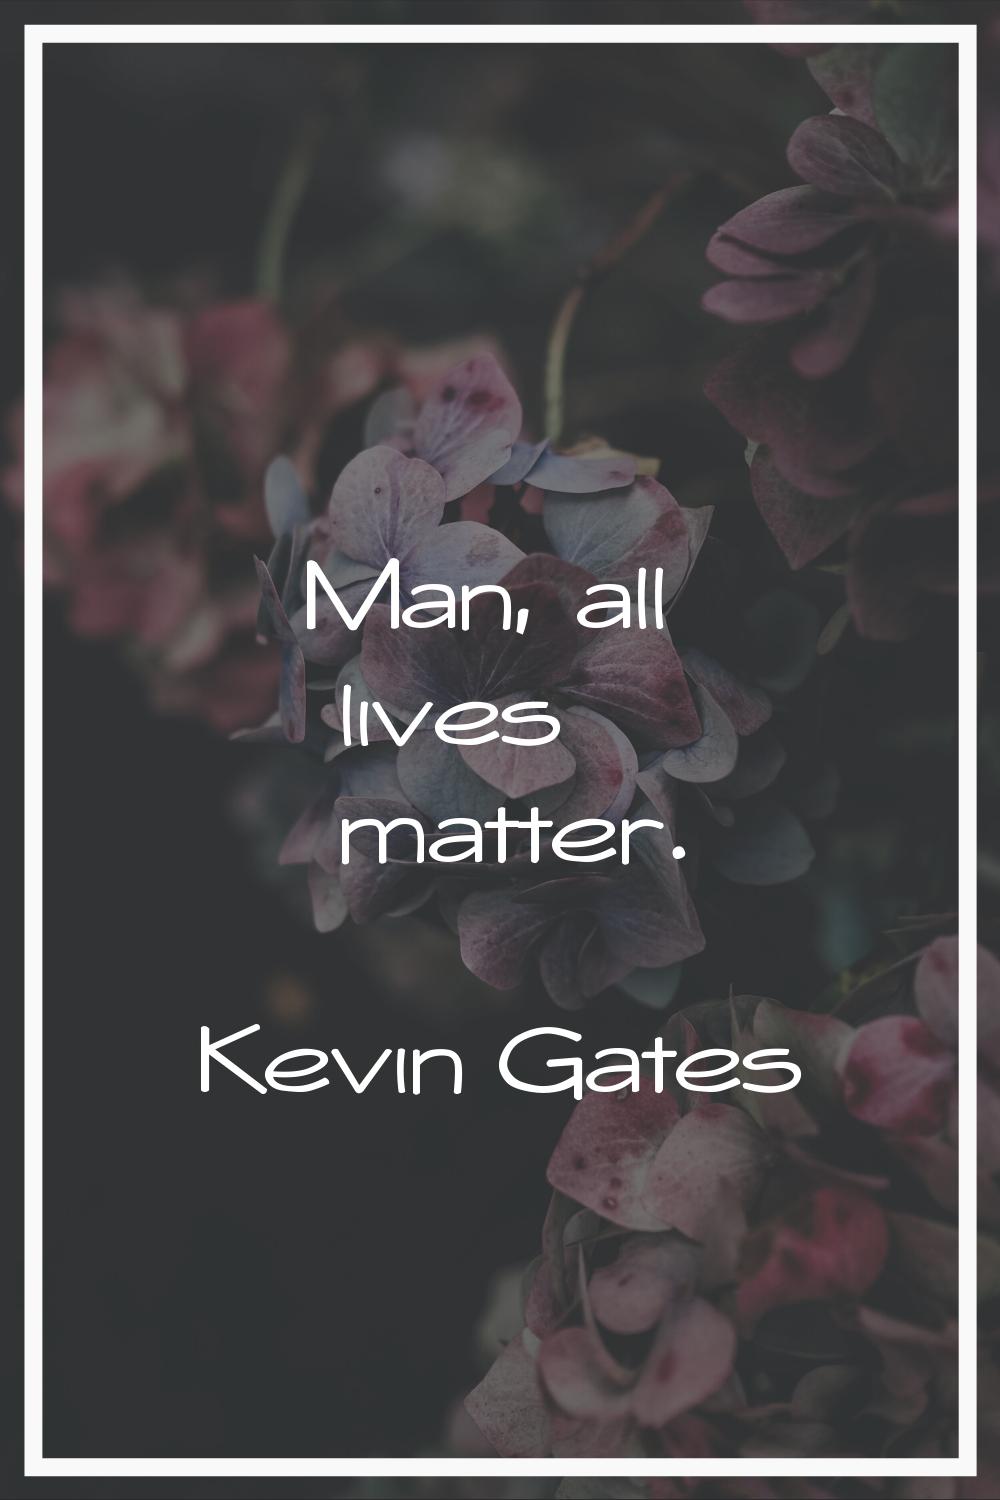 Man, all lives matter.